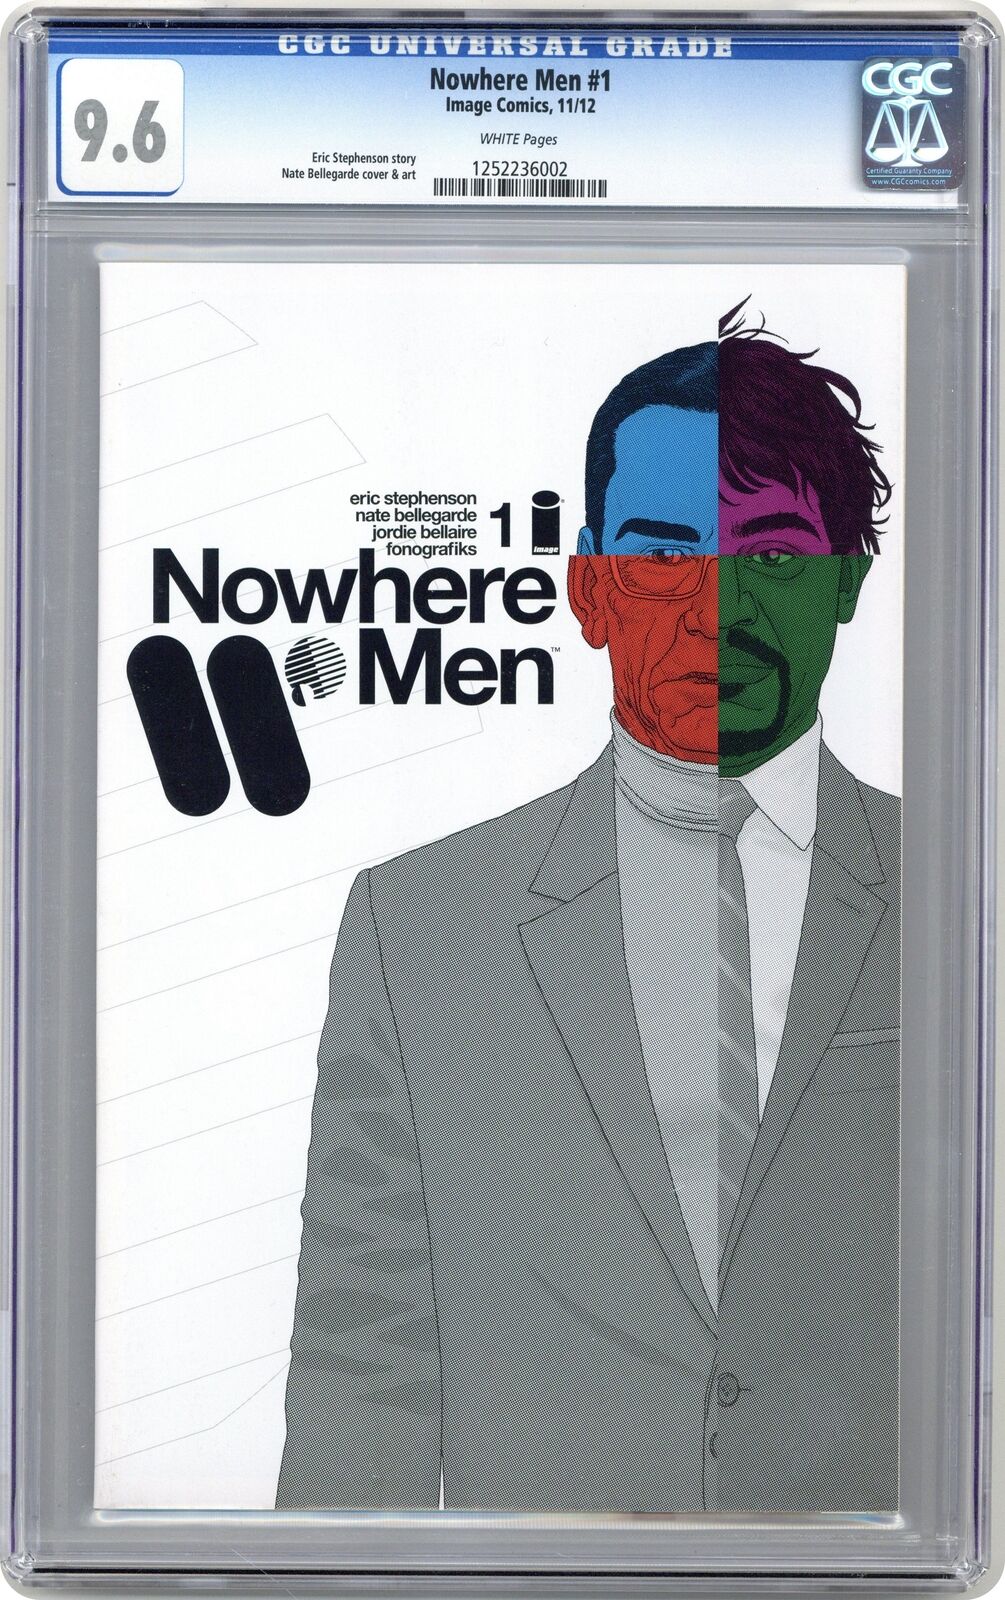 Nowhere Men 1A CGC 9.6 2012 1252236002